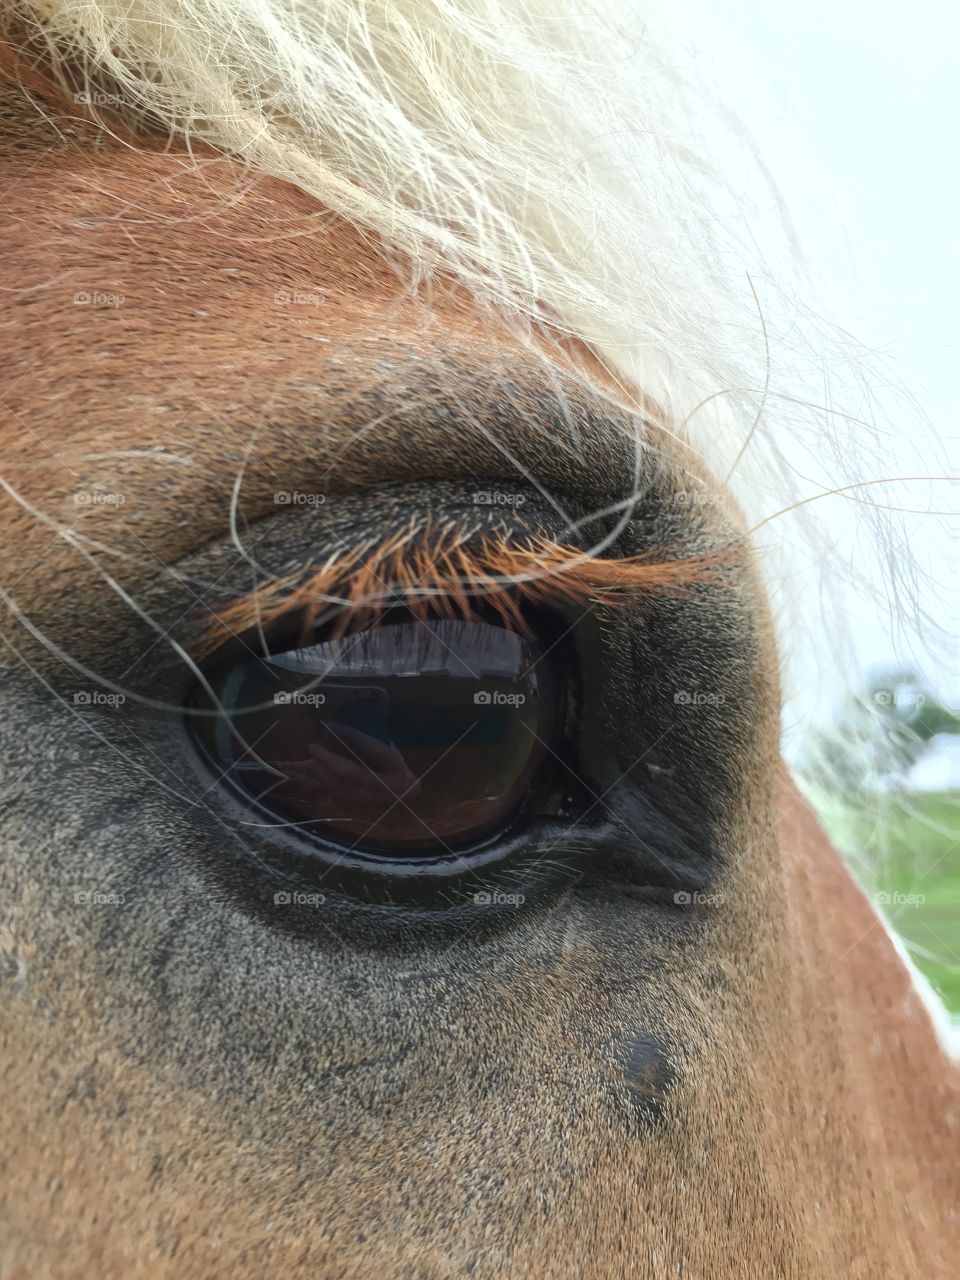 Horse eye in focus, with a dark iris.